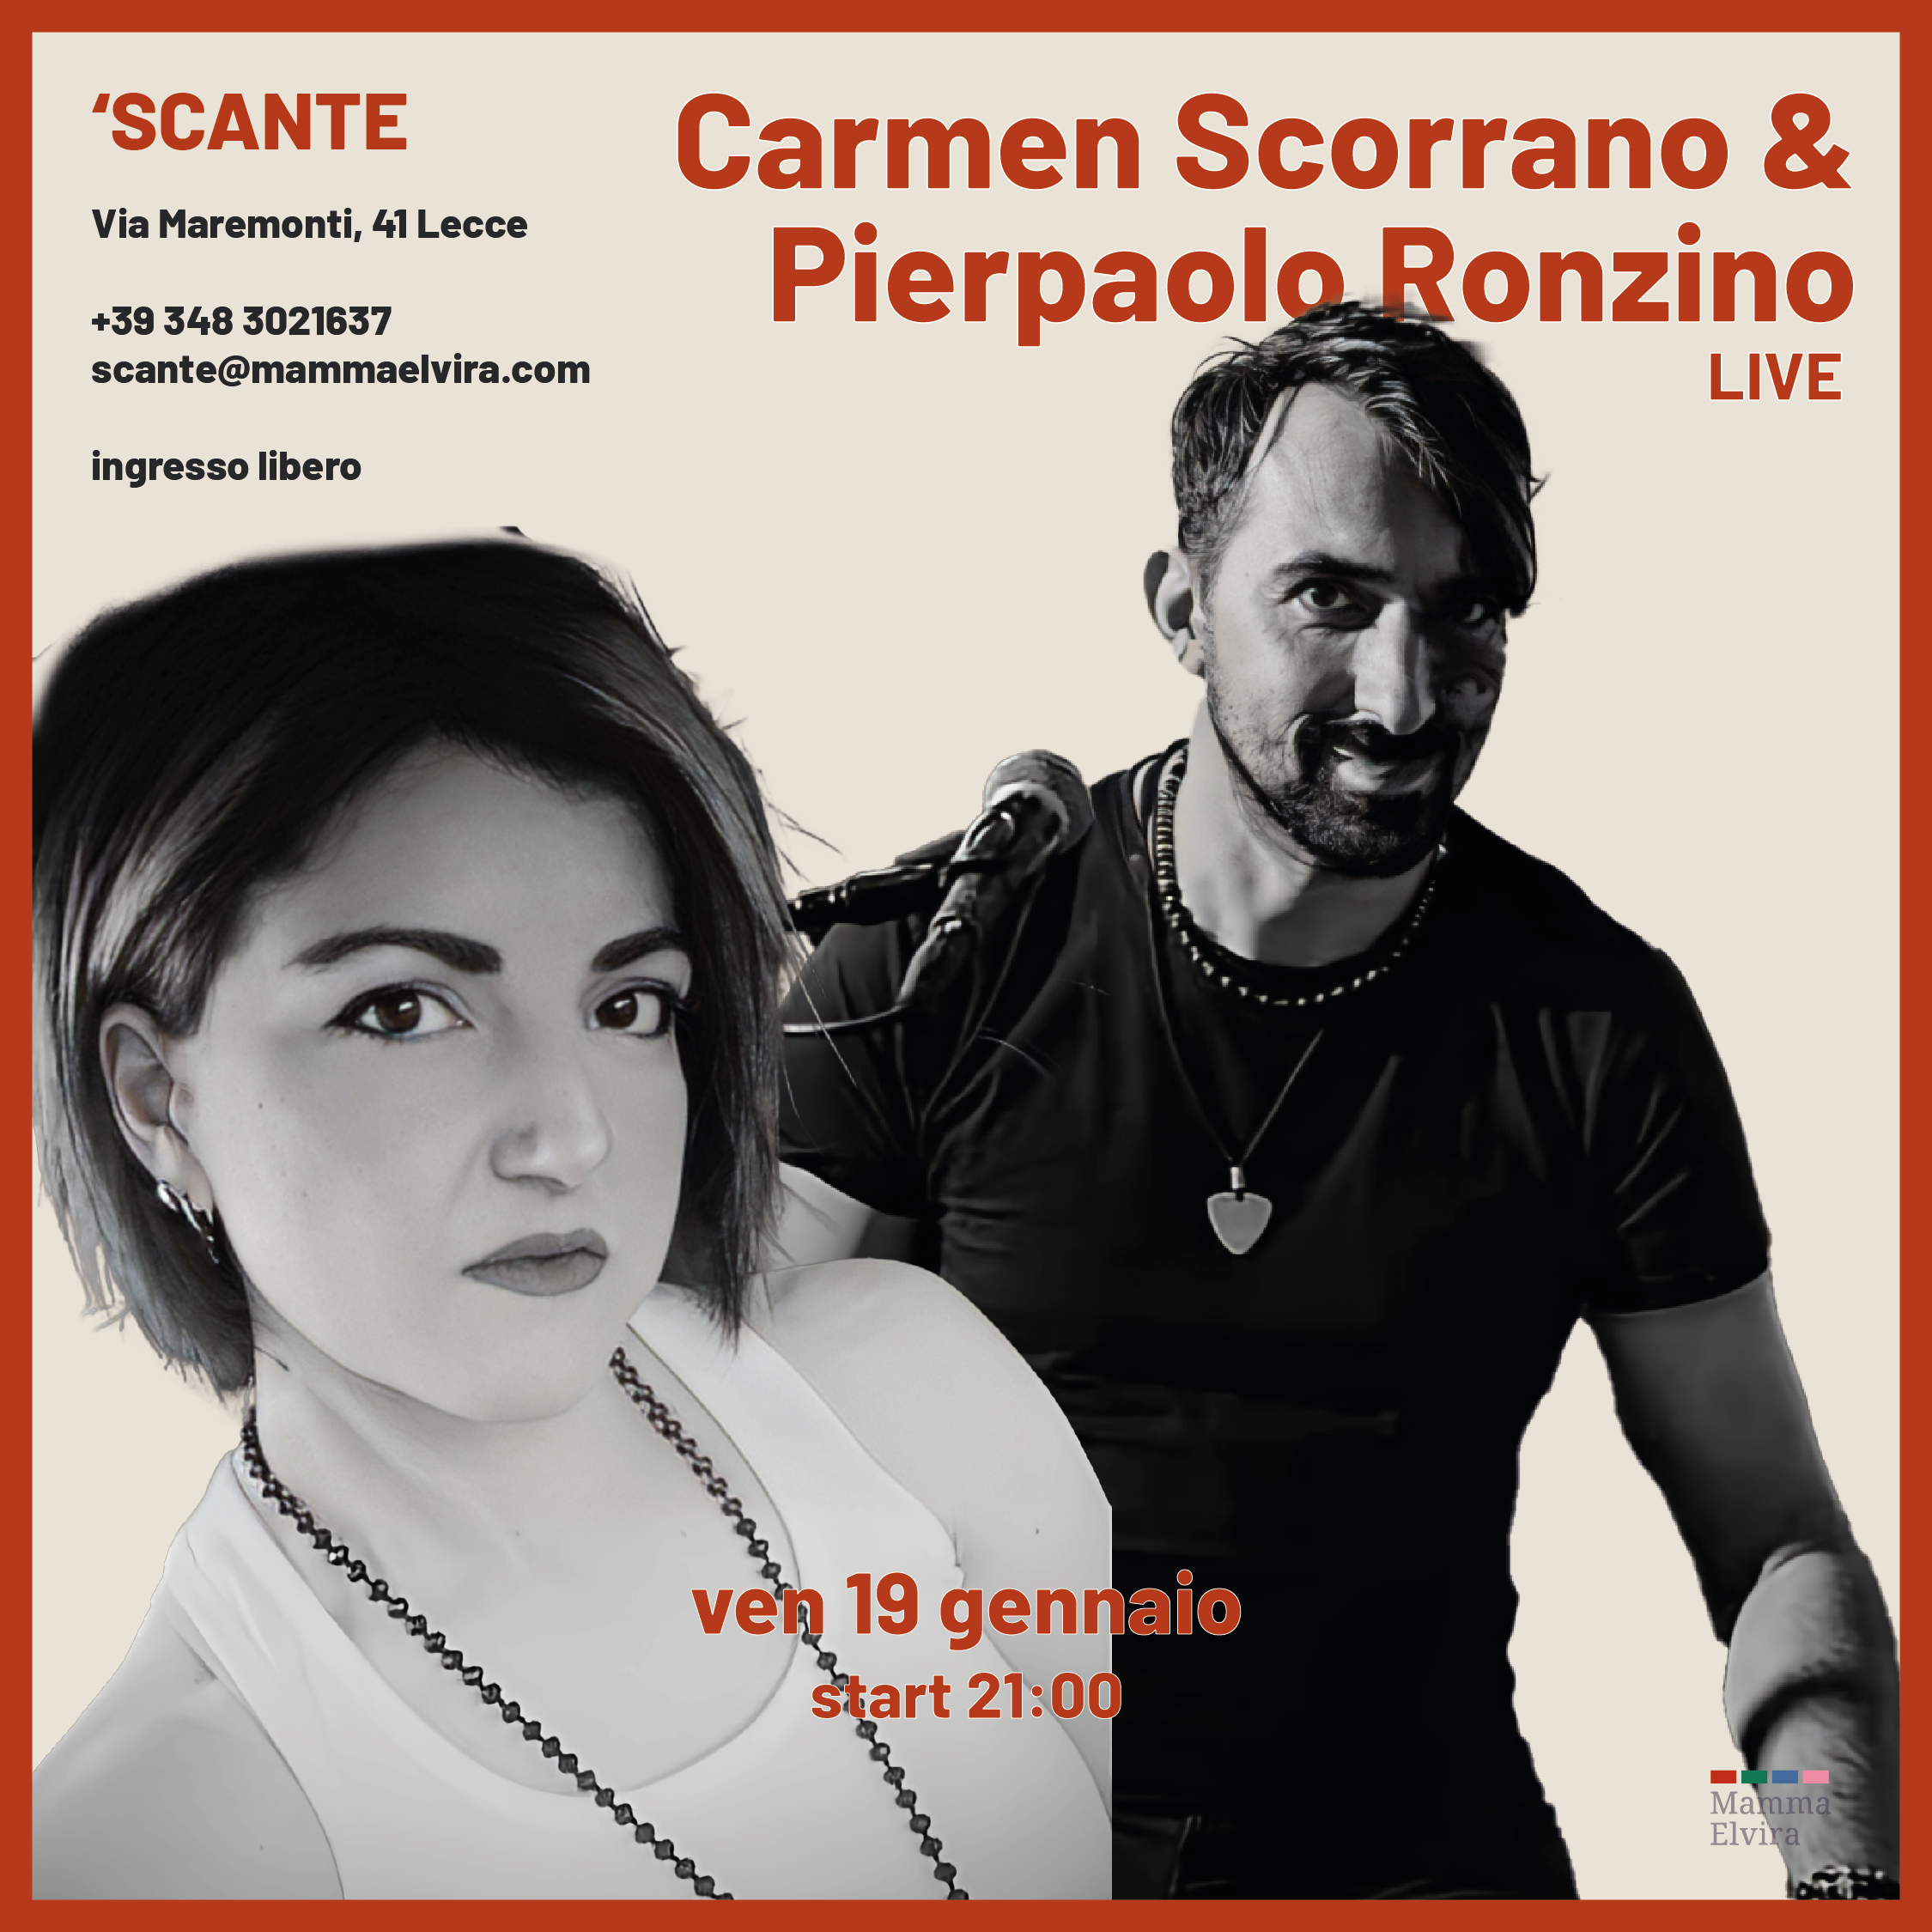 Carmen Scorrano & Pierpaolo Ronzino Acoustic Live cover image